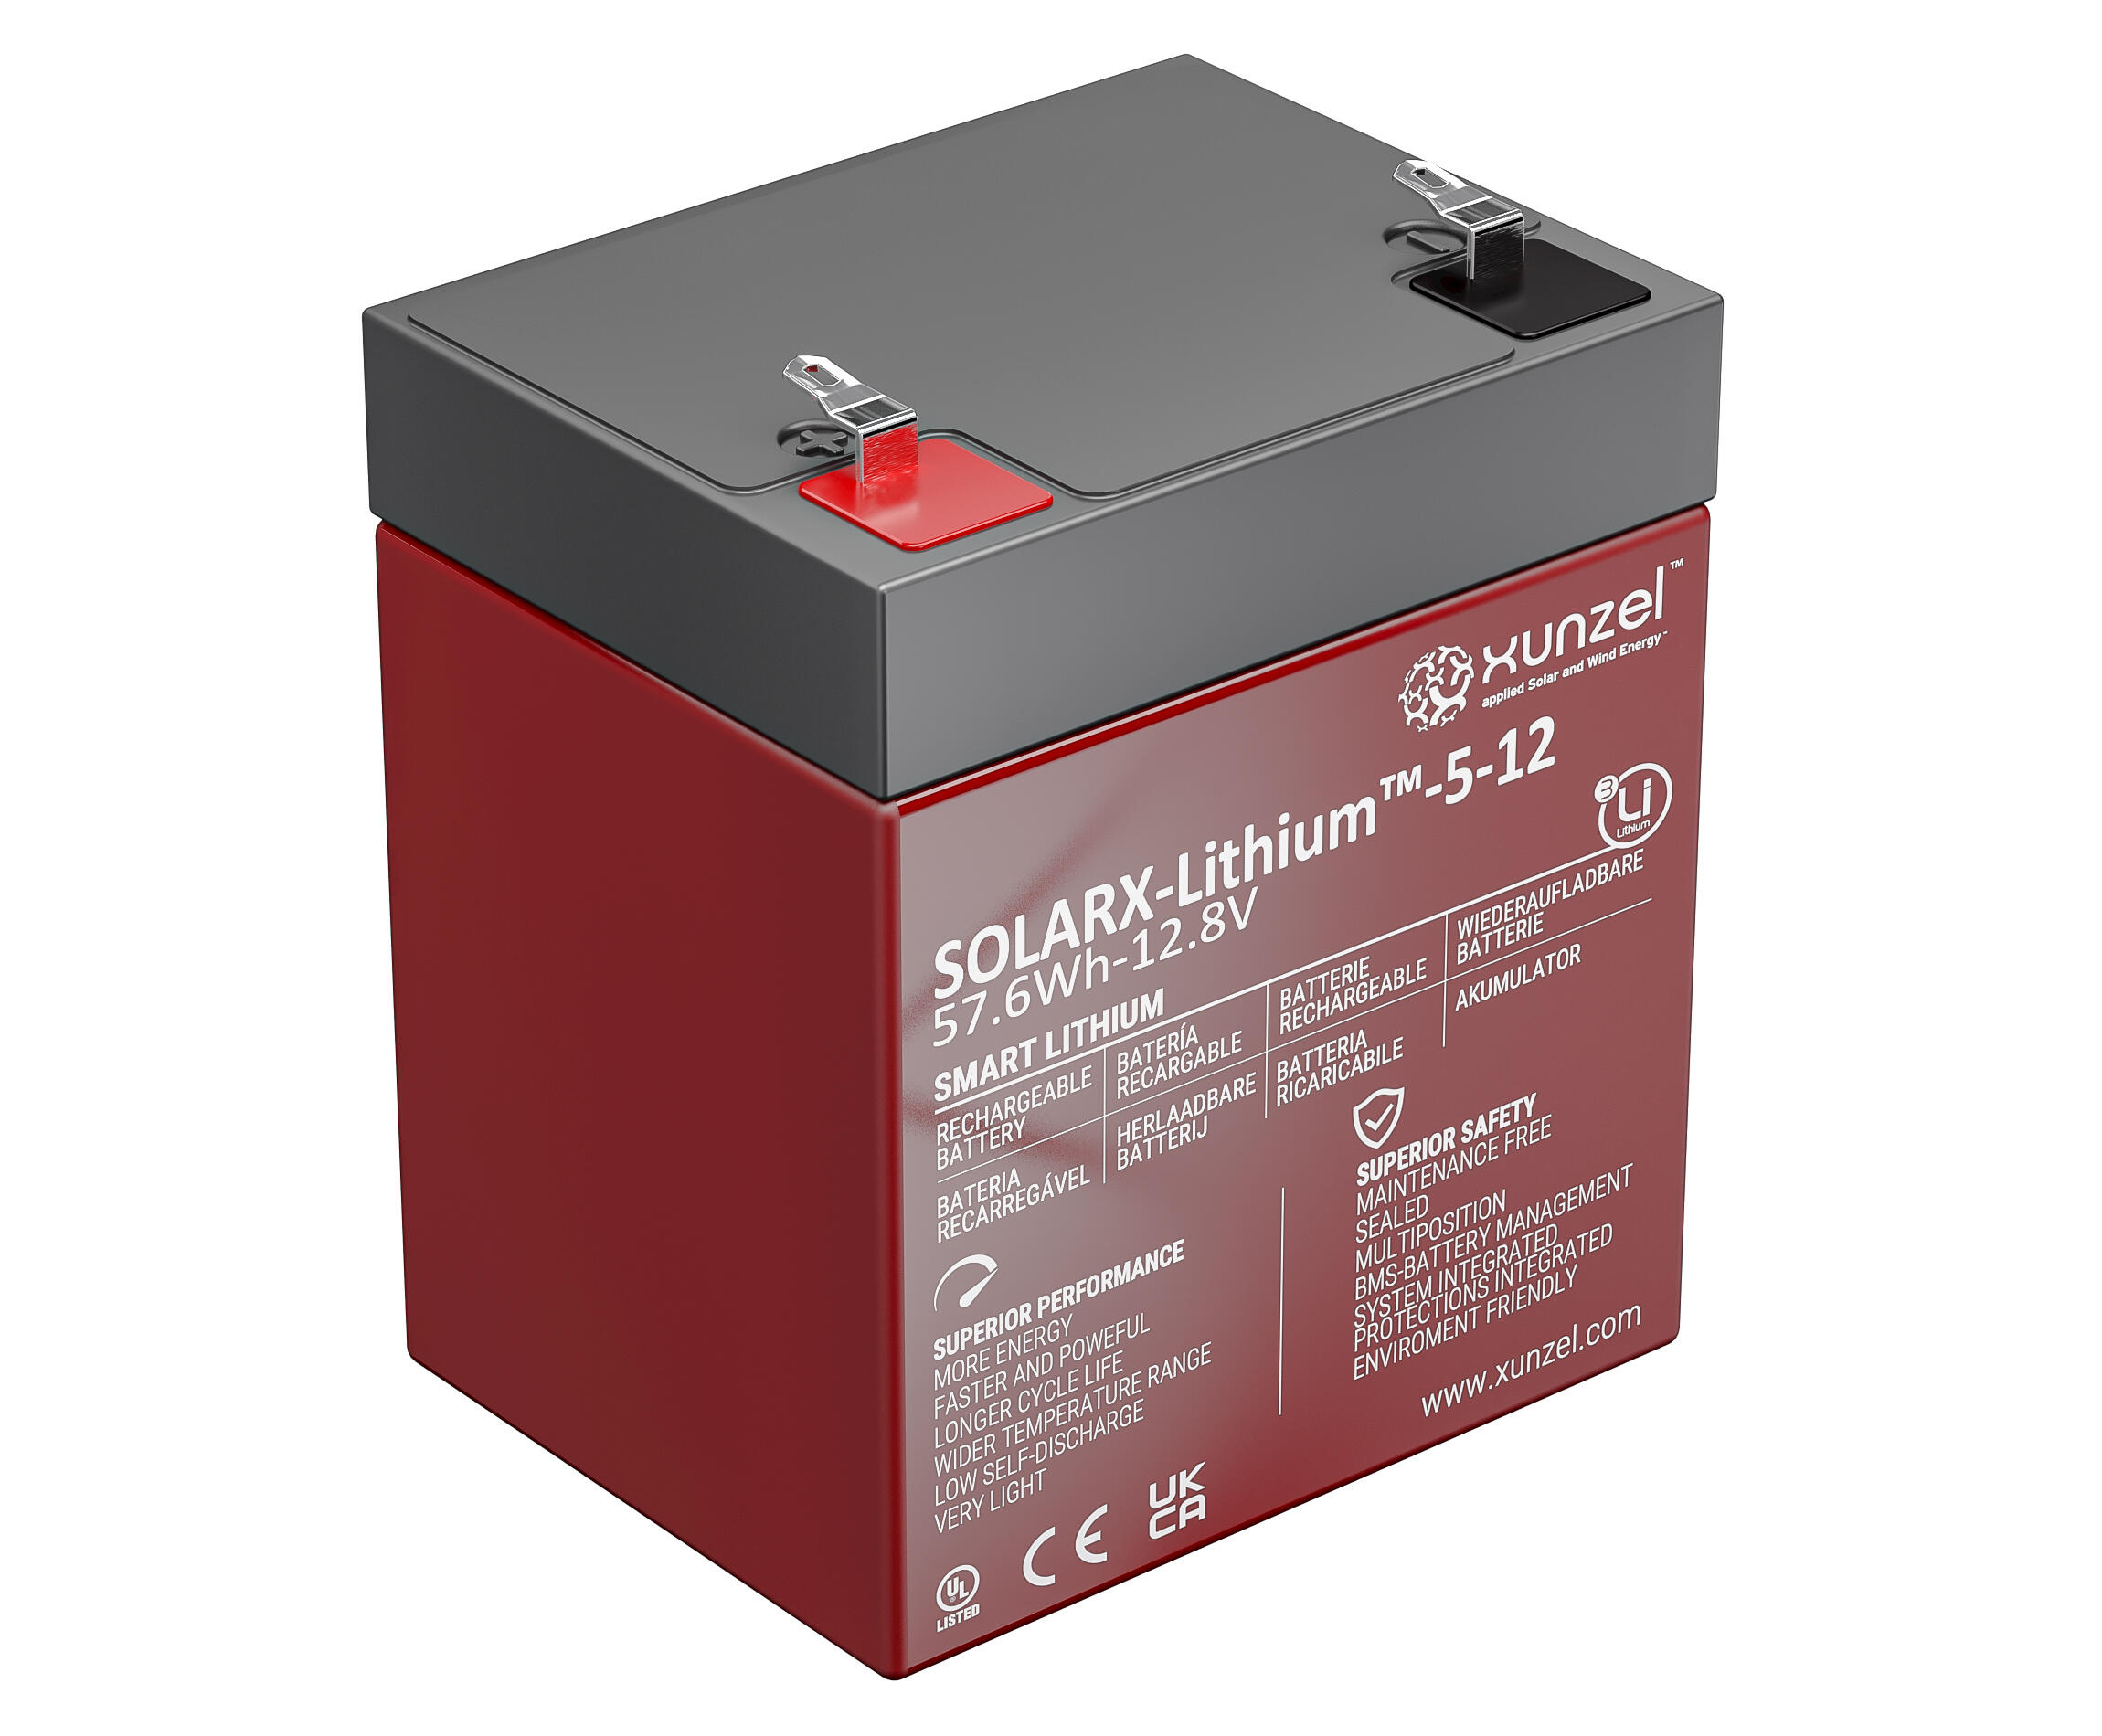 Batería solar solarx-lithium-5-58wh xunzel 12v segura, bms